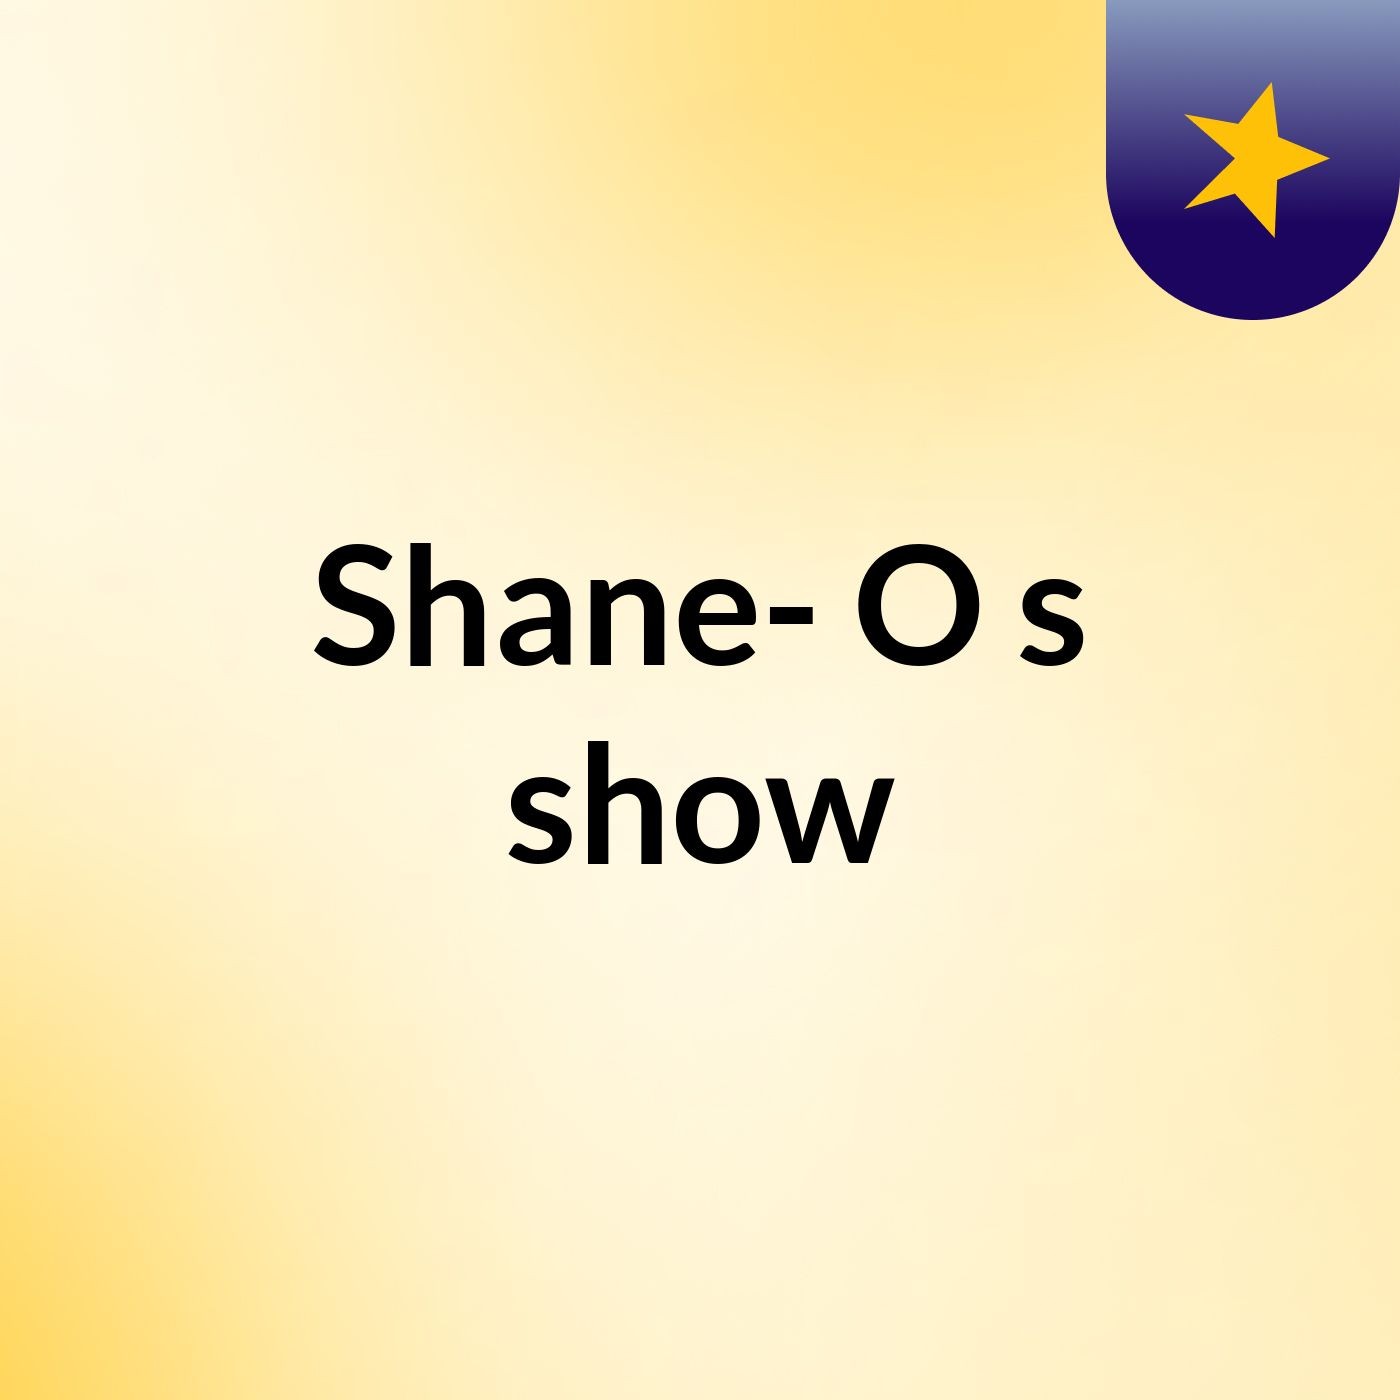 Shane- O's show